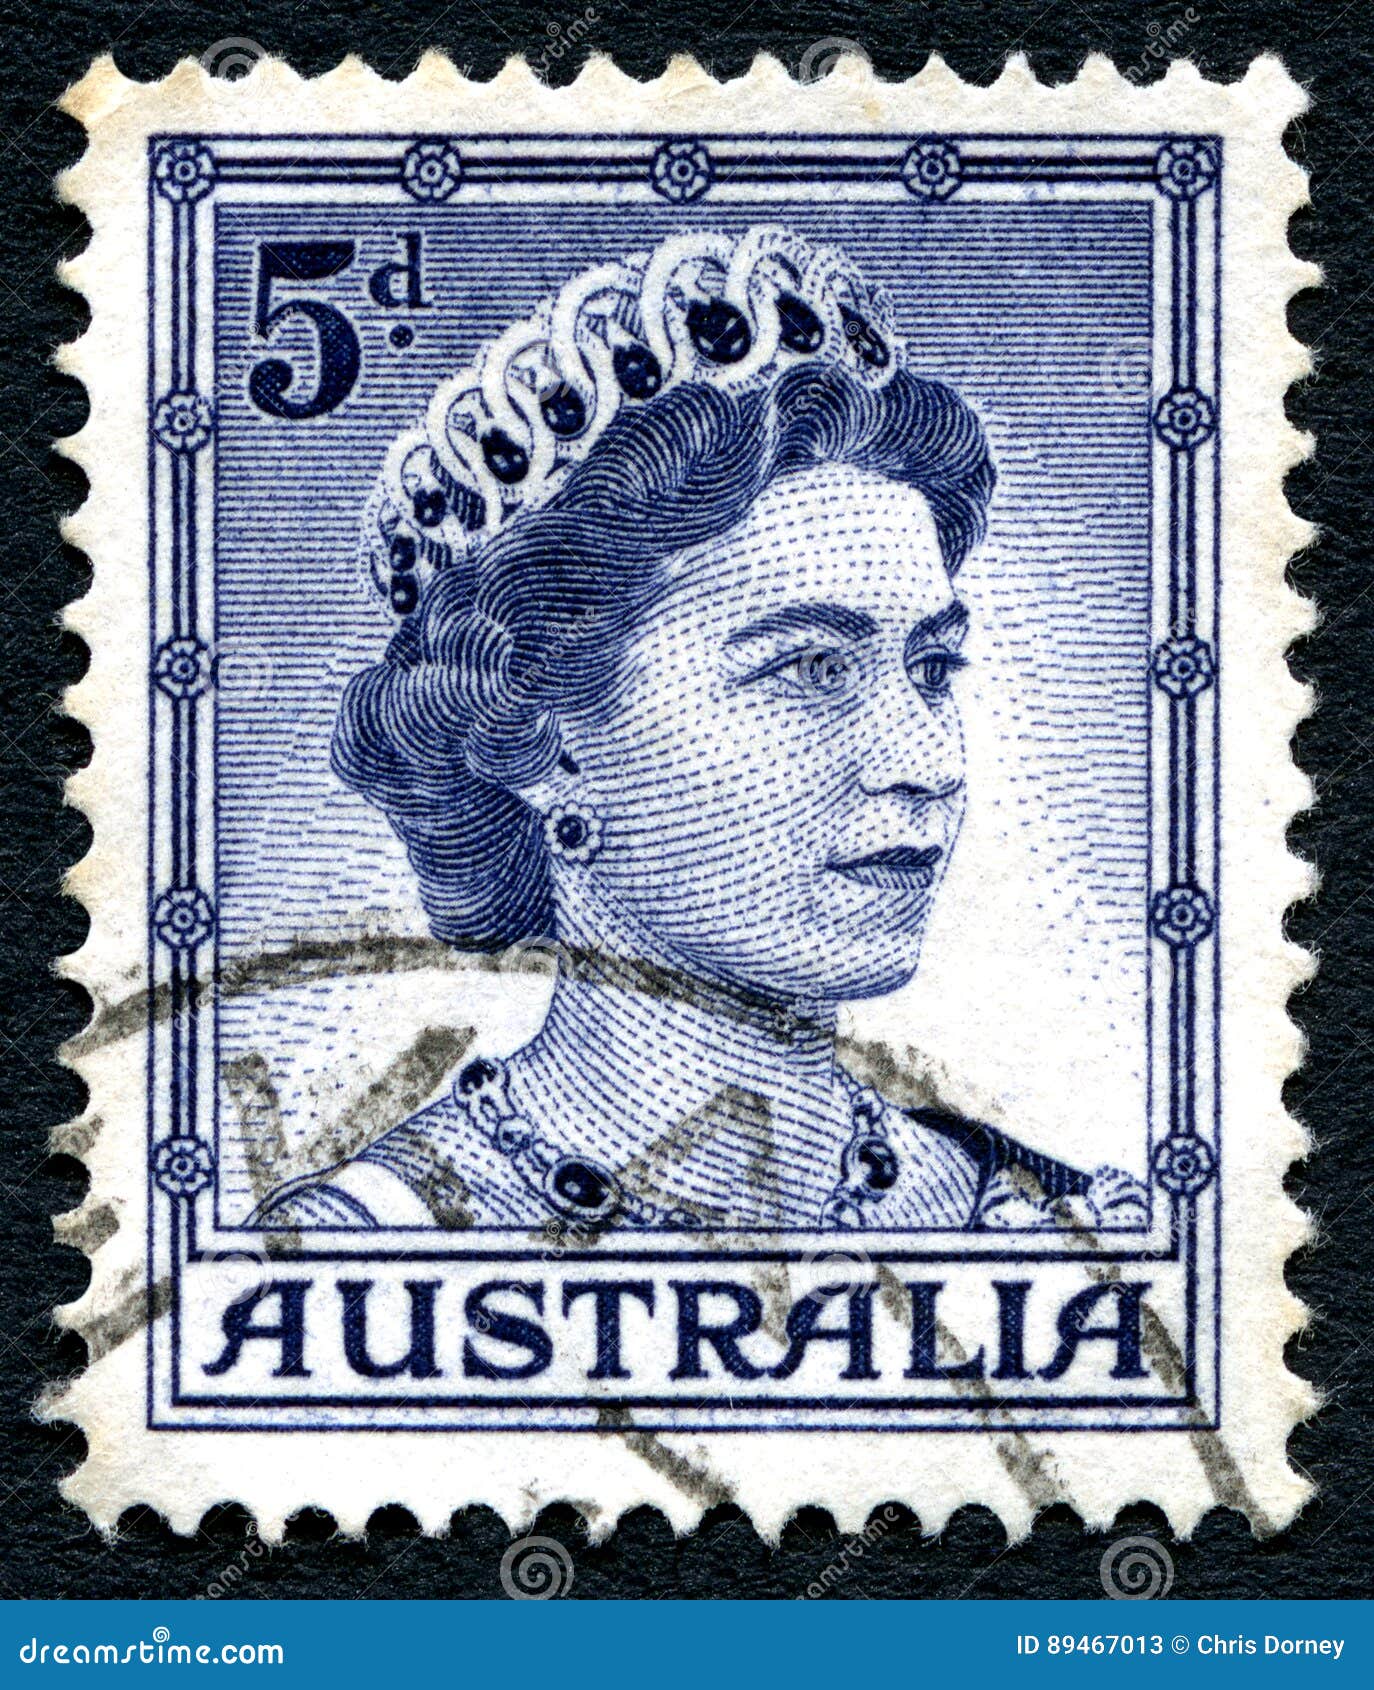 Queen Elizabeth II Australian Postage Stamp Editorial Stock Photo ...